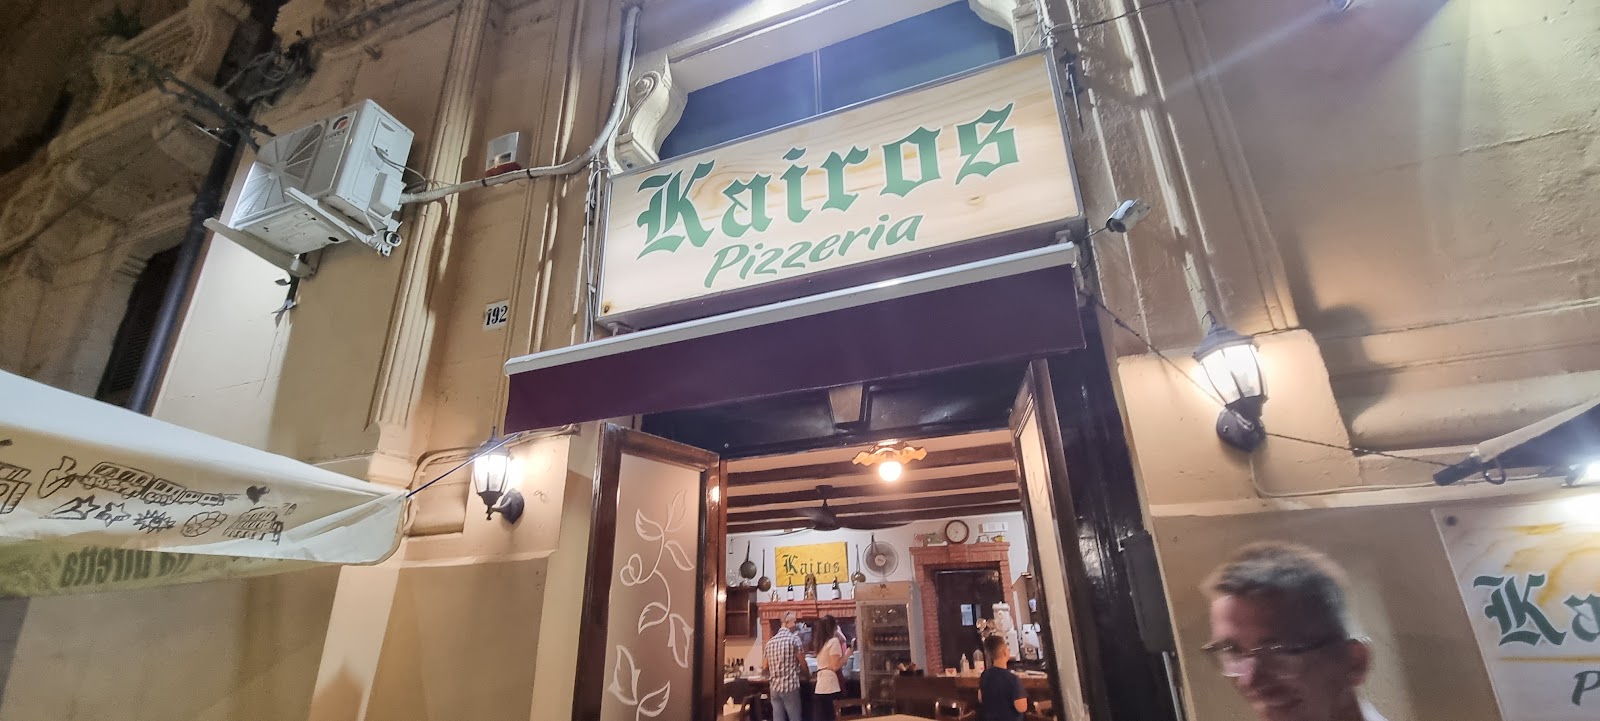 Foto di Pizzeria Kairos